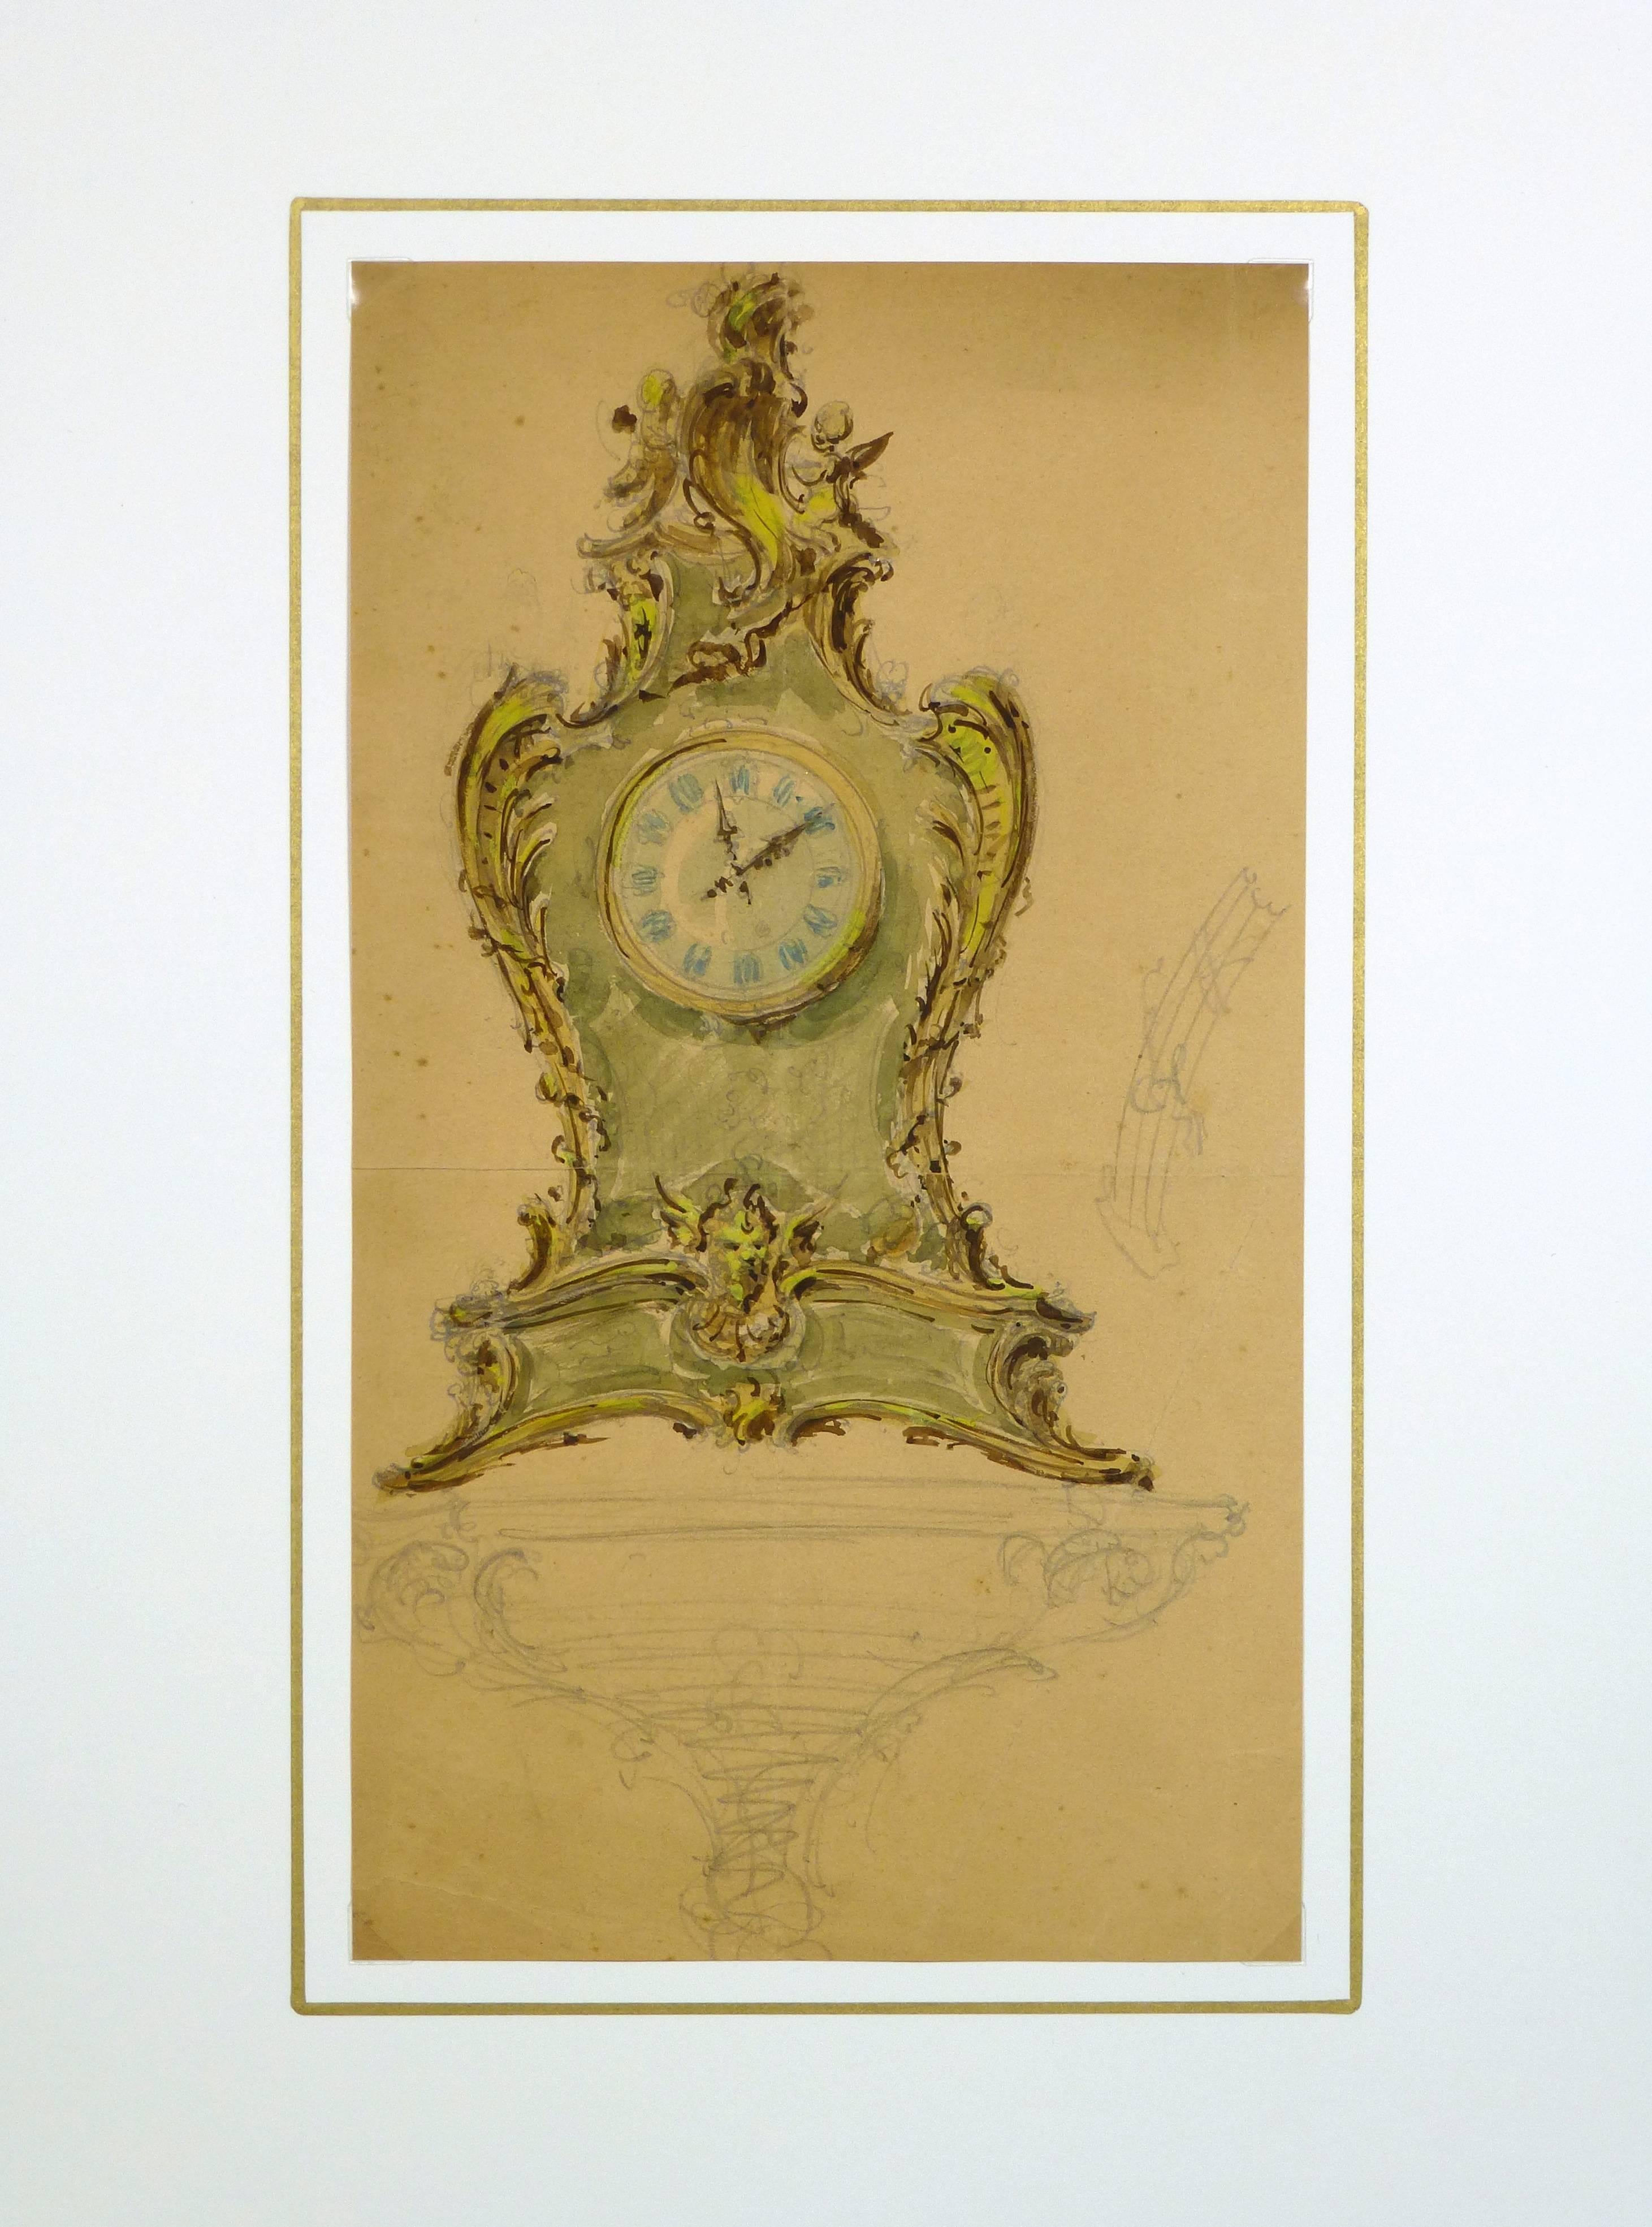 Aquarelle et crayon français représentant une horloge ornée, vers 1930.  

Œuvre d'art originale sur papier présentée sur un tapis blanc avec une bordure dorée. Pochette plastique d'archivage et certificat d'authenticité inclus. Œuvre d'art, 12 